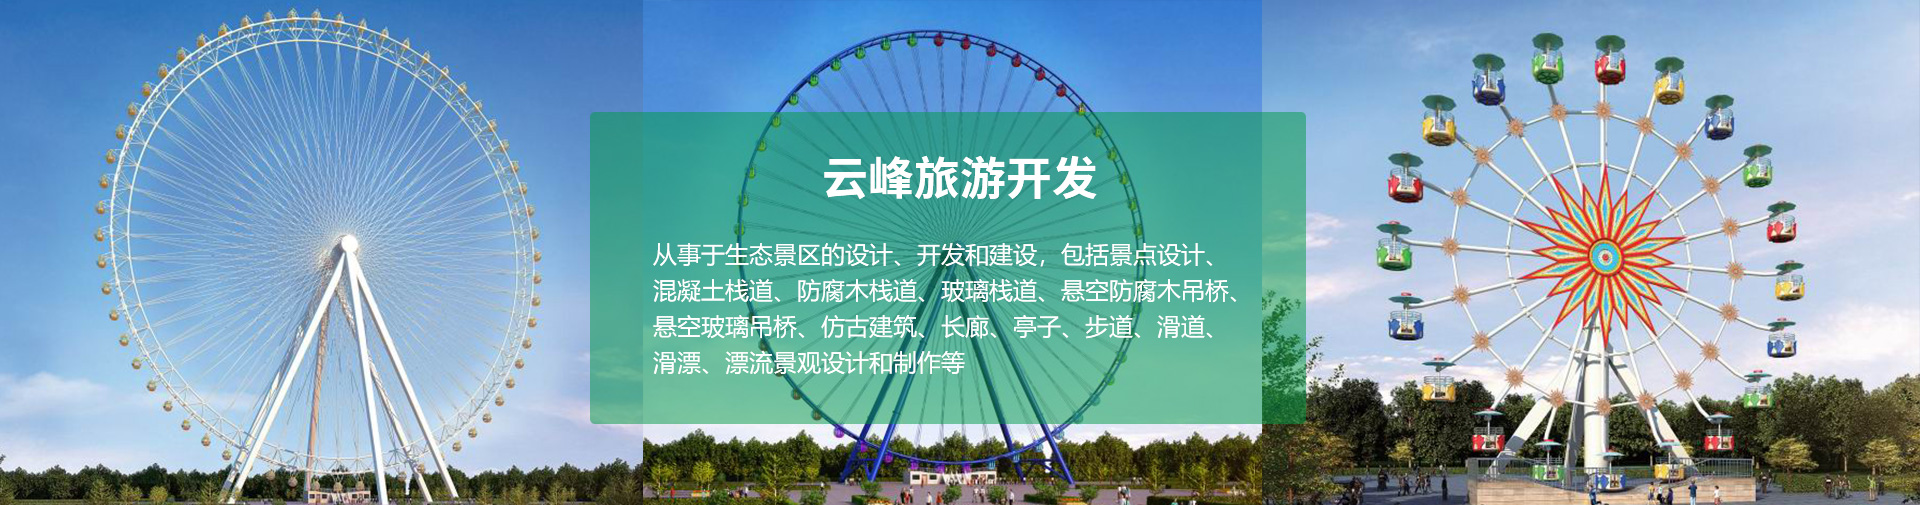 河南云峰旅游开发有限公司